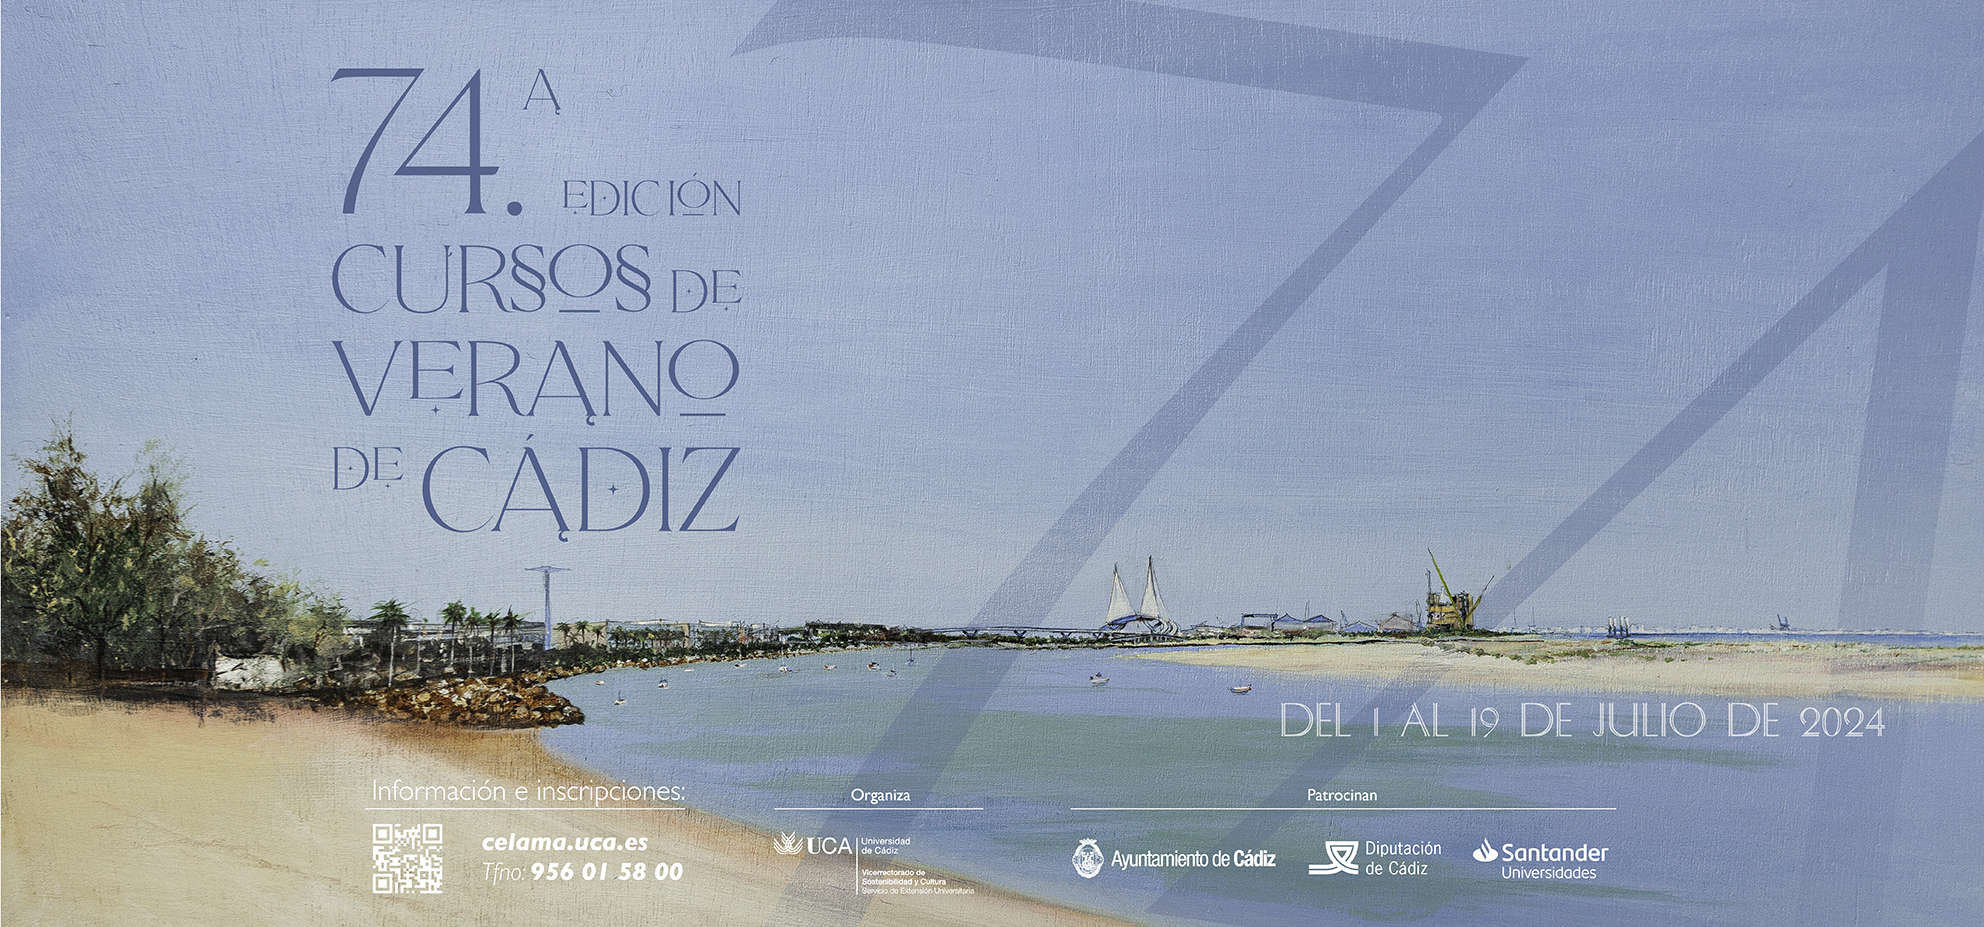 La 74ª Edición de los Cursos de Verano de la UCA en Cádiz oferta diecinueve seminarios, seis módulos de la Escuela de Danza y una completa agenda cultural